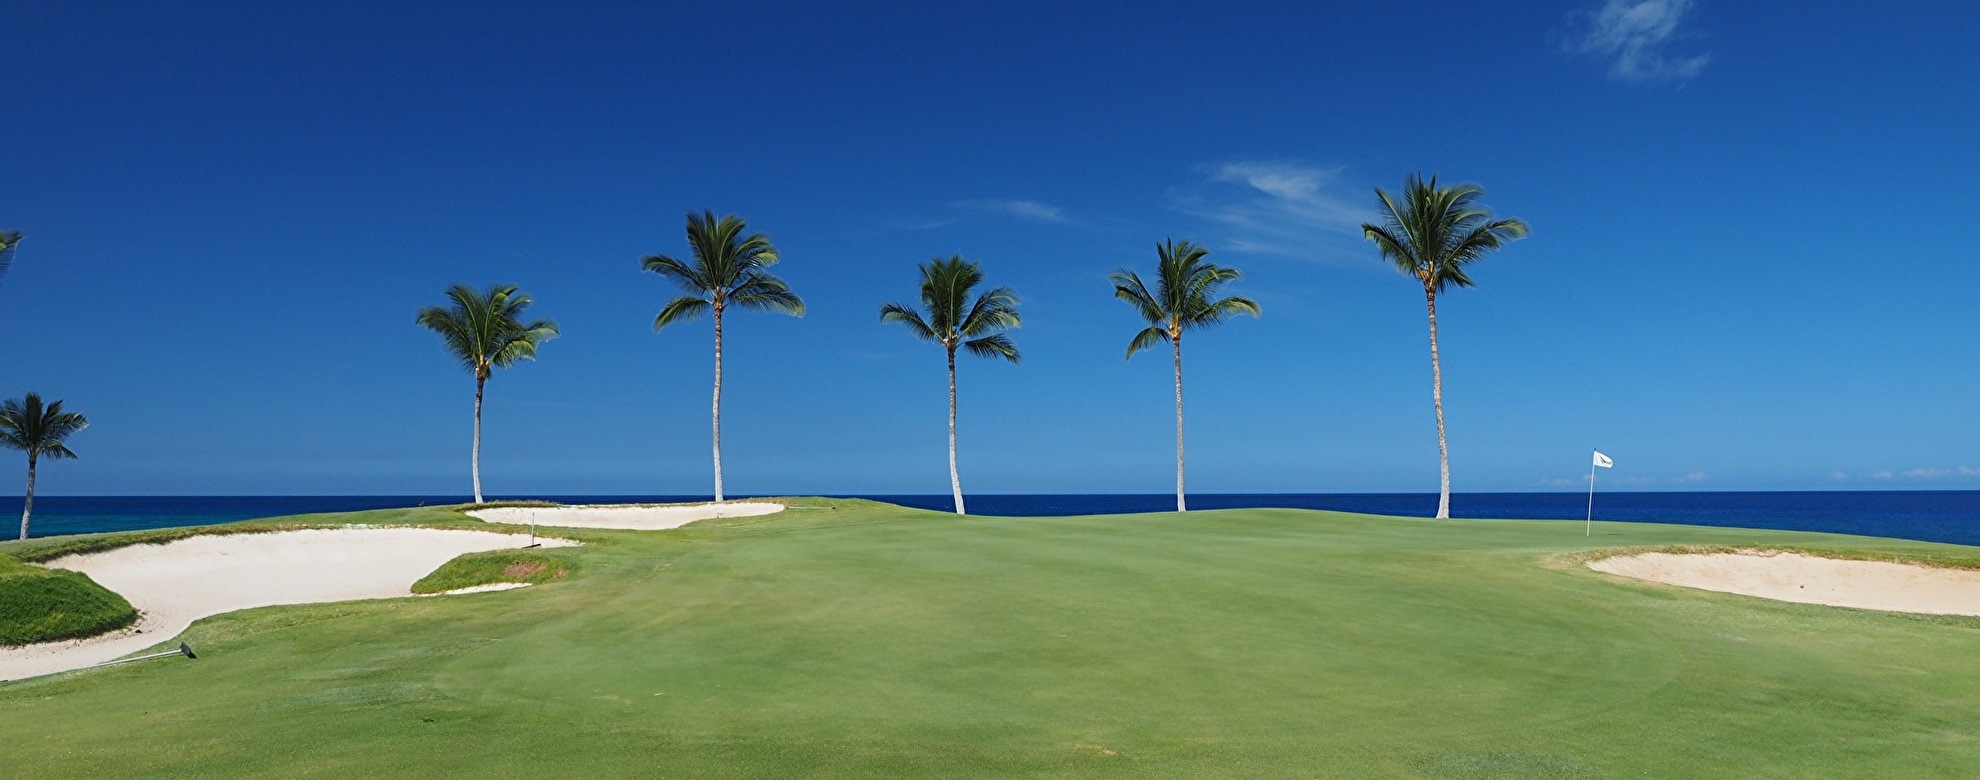 ハワイの人気おすすめゴルフ場11選 料金相場も紹介